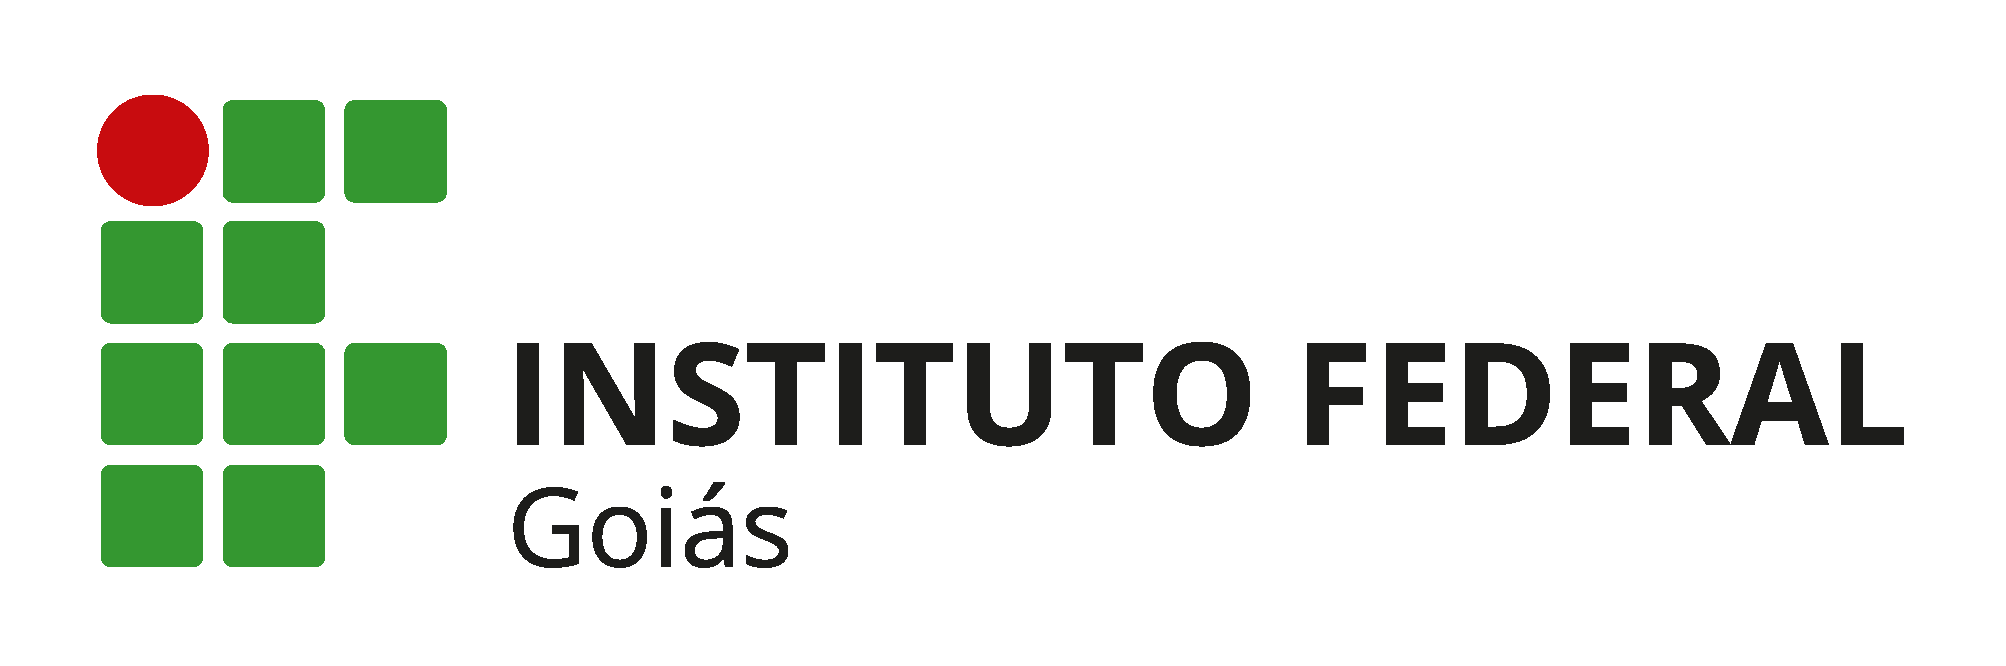 Logo pra Site